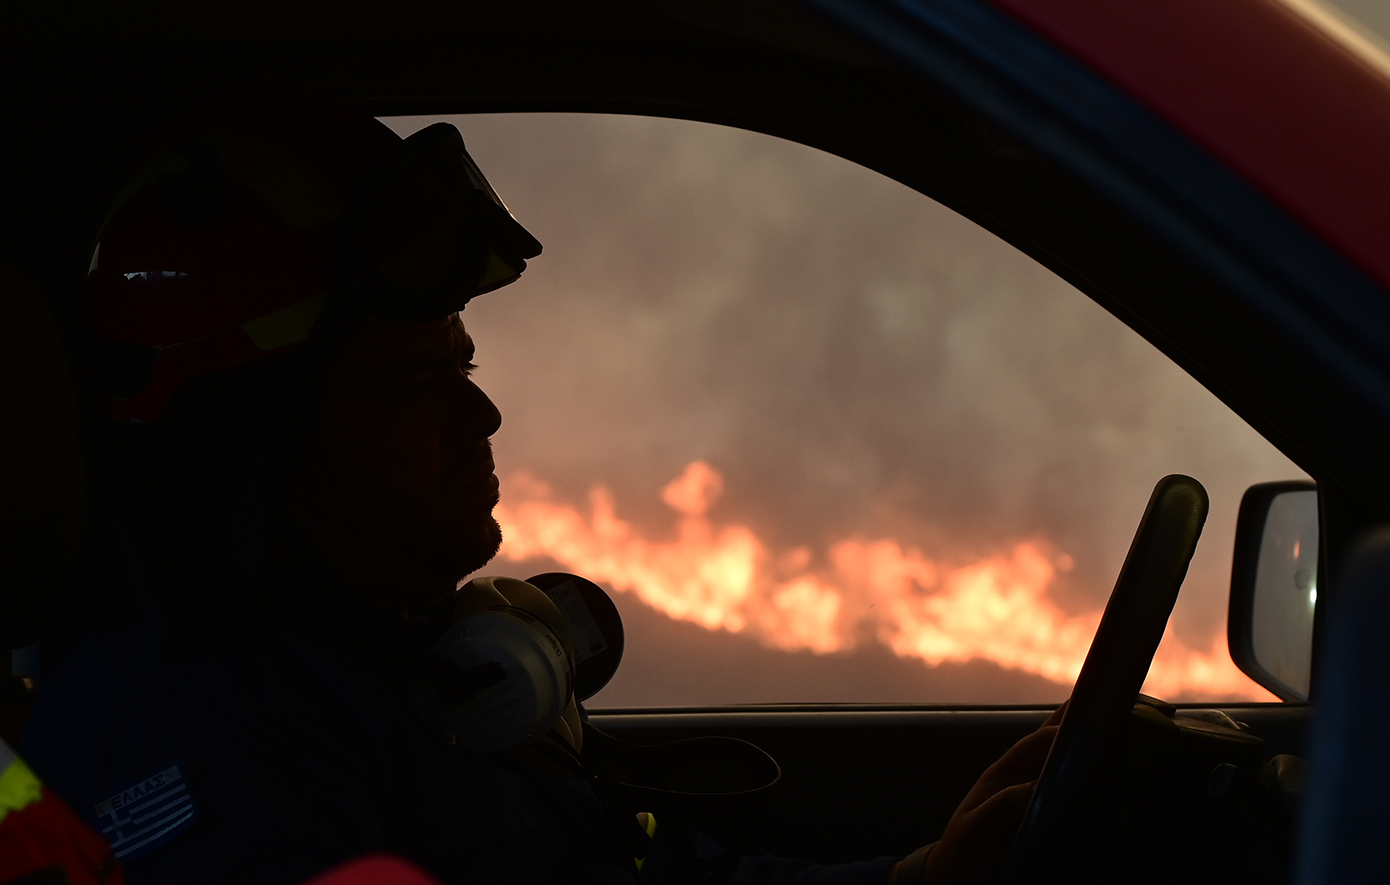 Υψηλός ο κίνδυνος φωτιάς για αρκετές περιοχές της χώρας την Τρίτη 6/8 – Ο χάρτης πρόβλεψης